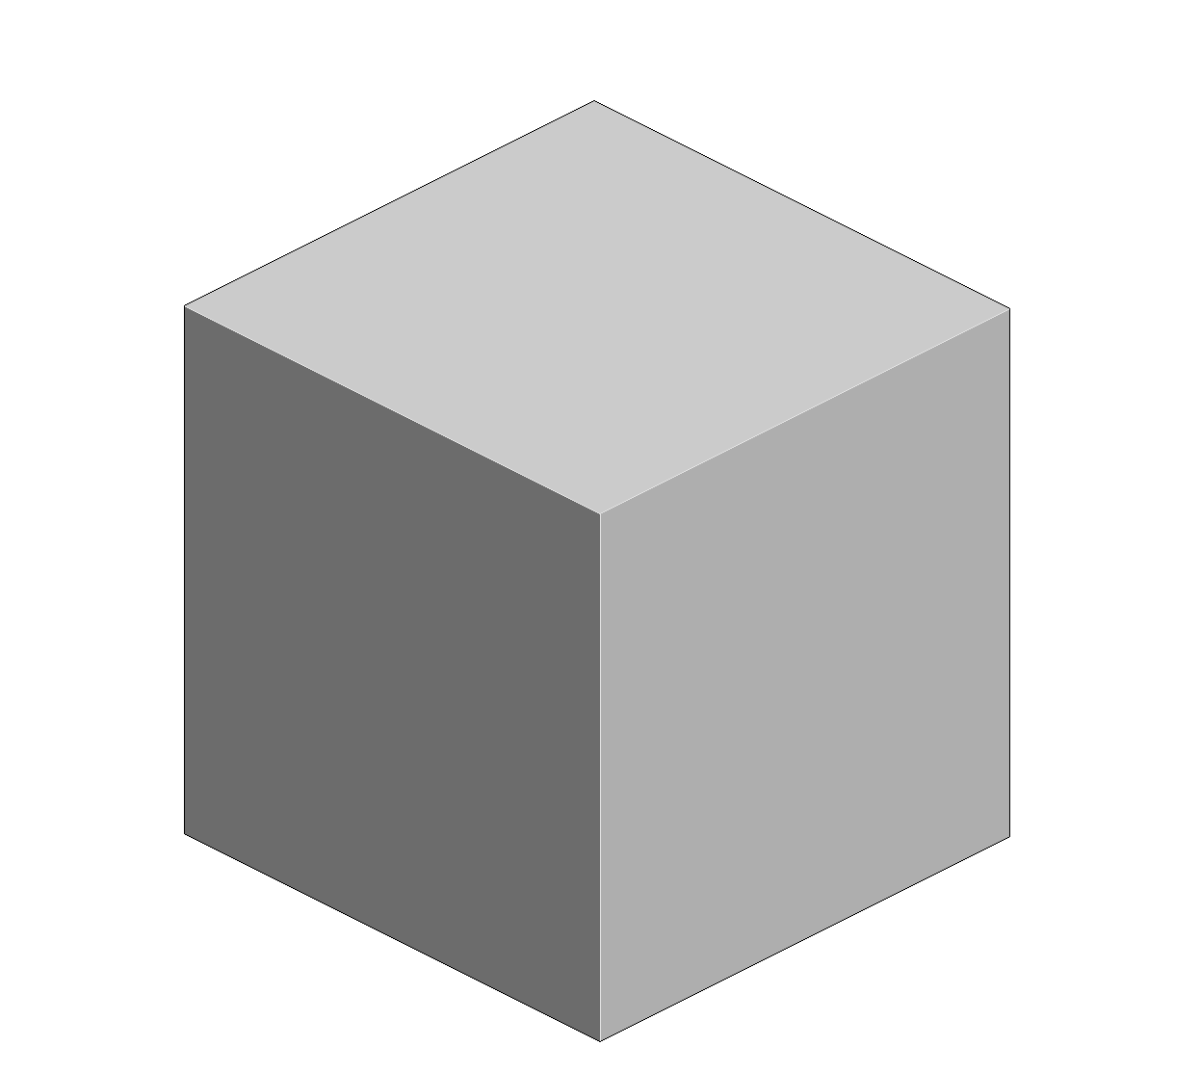 Куб. Объемная фигура куб. Трёхмерный куб. Объемный квадрат. Cube download